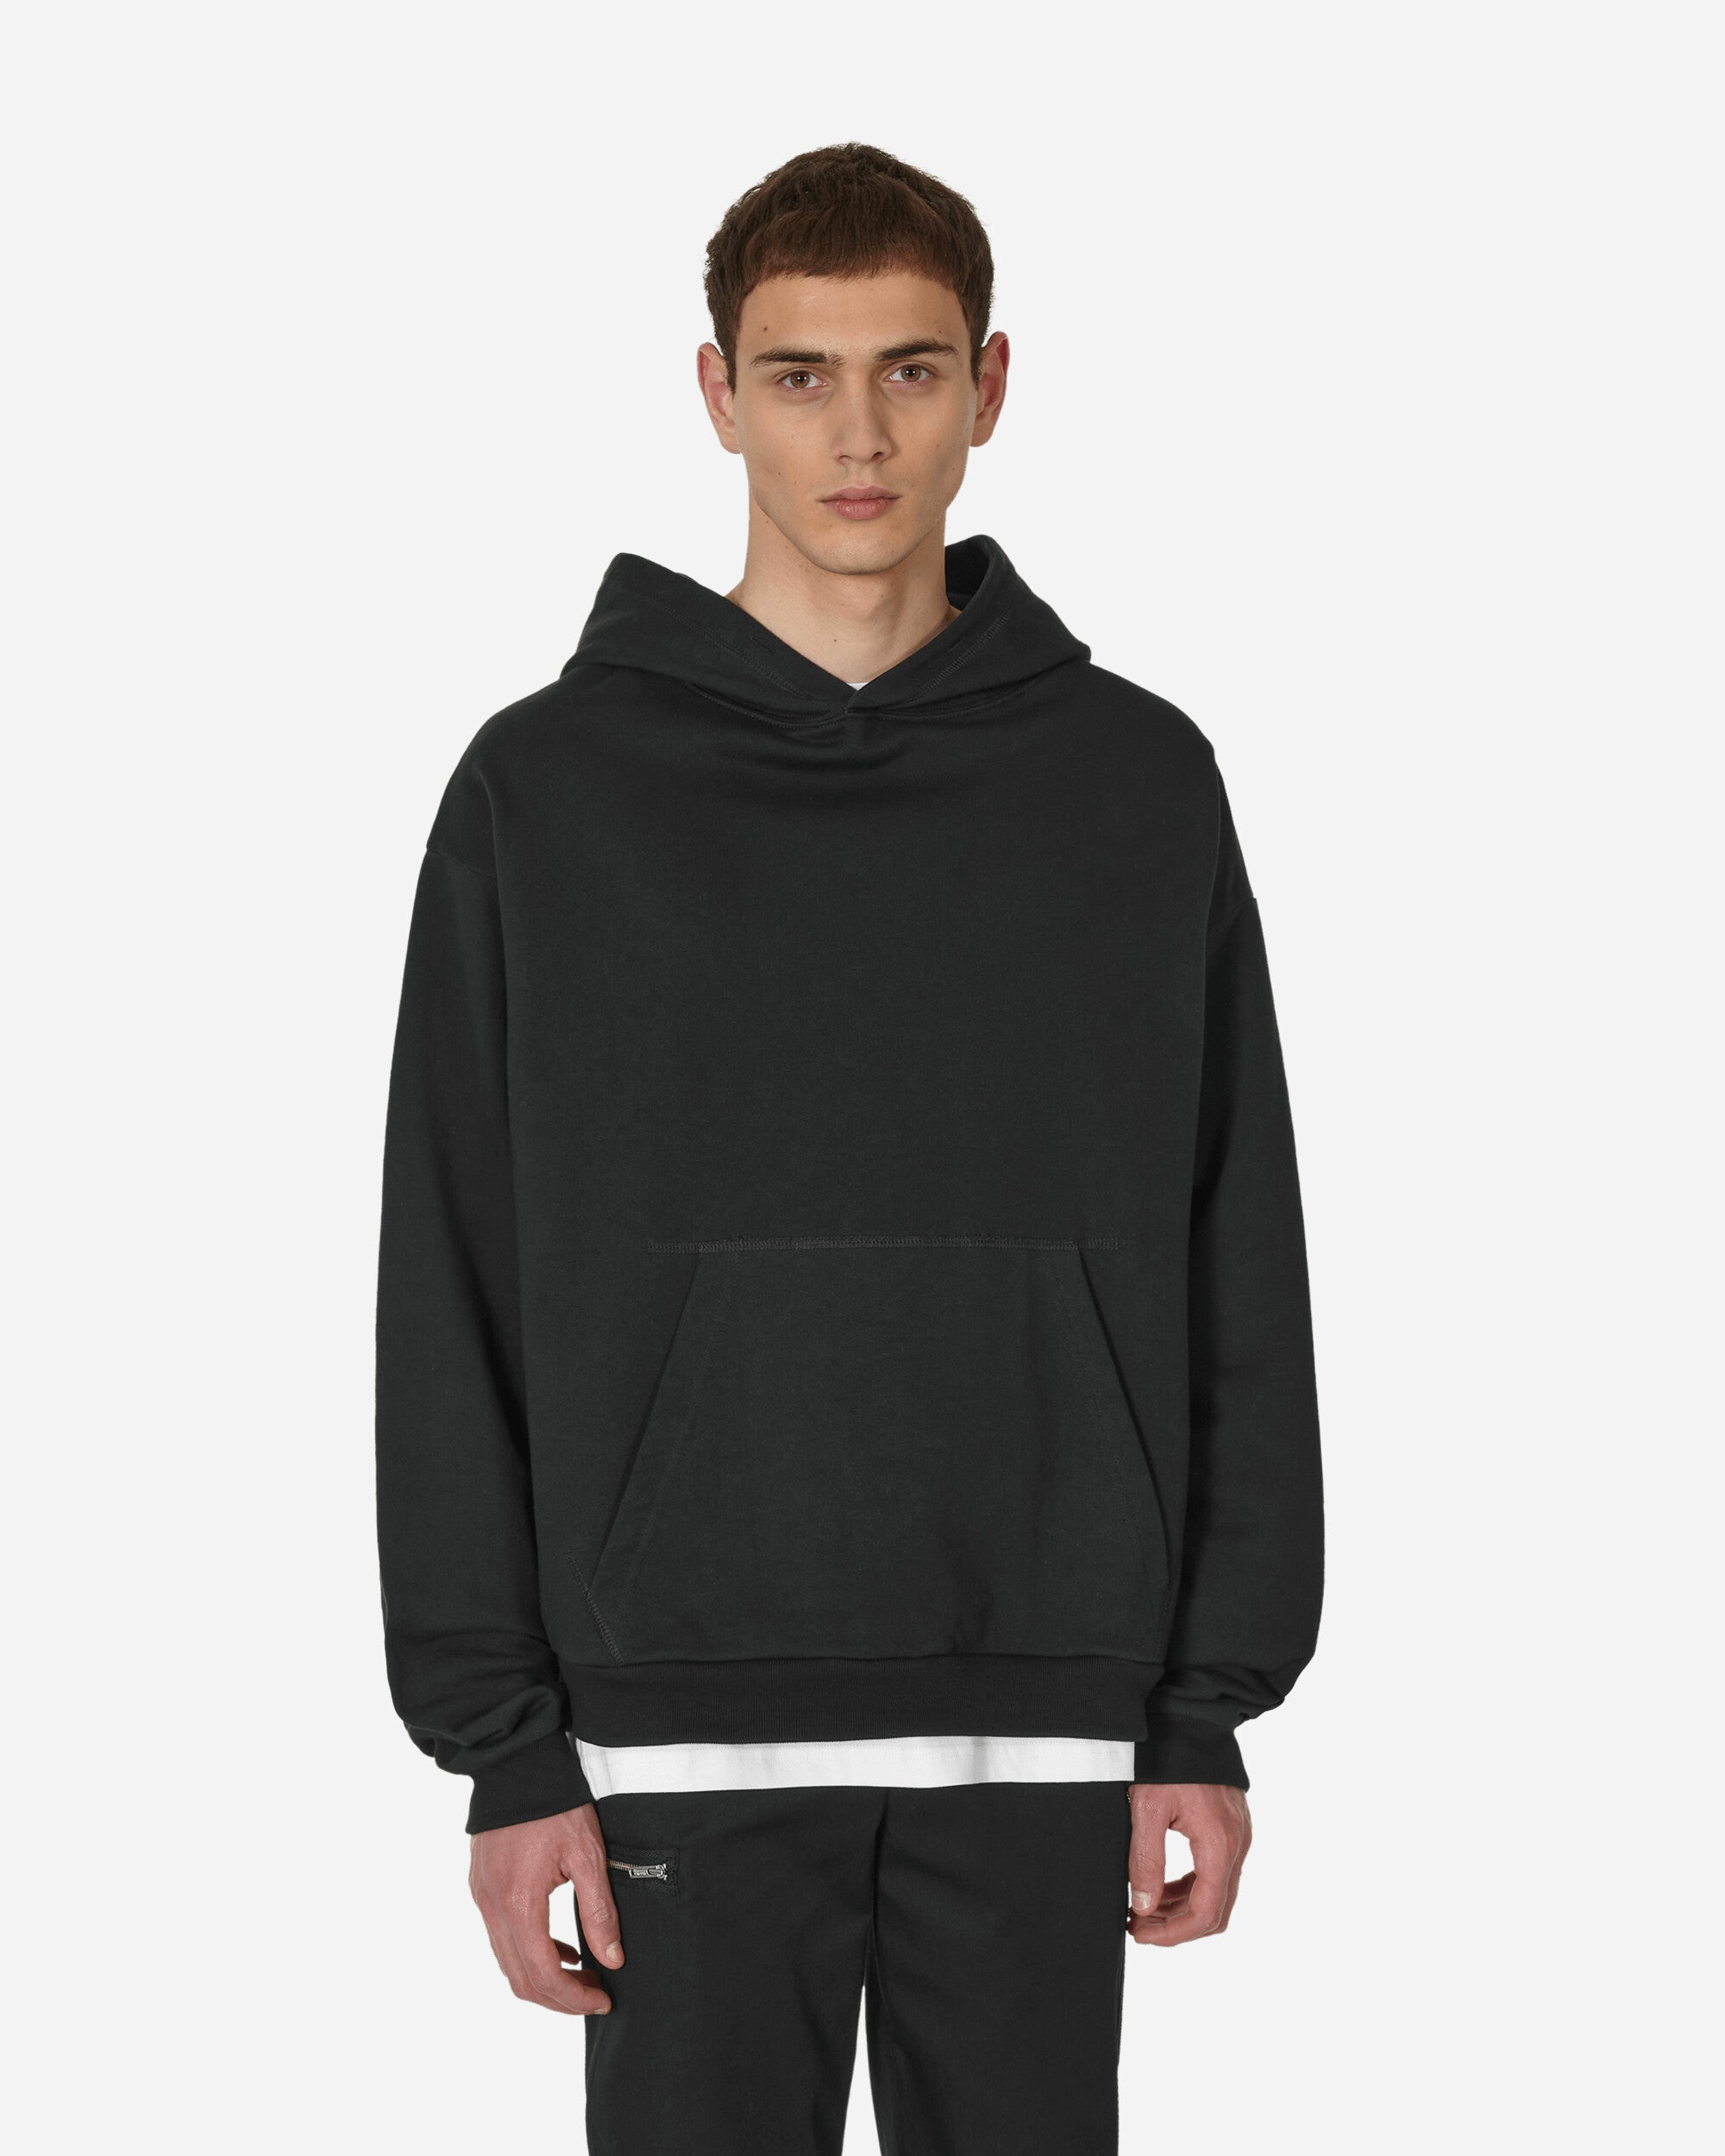 Designer hoodies, best hoodies for men